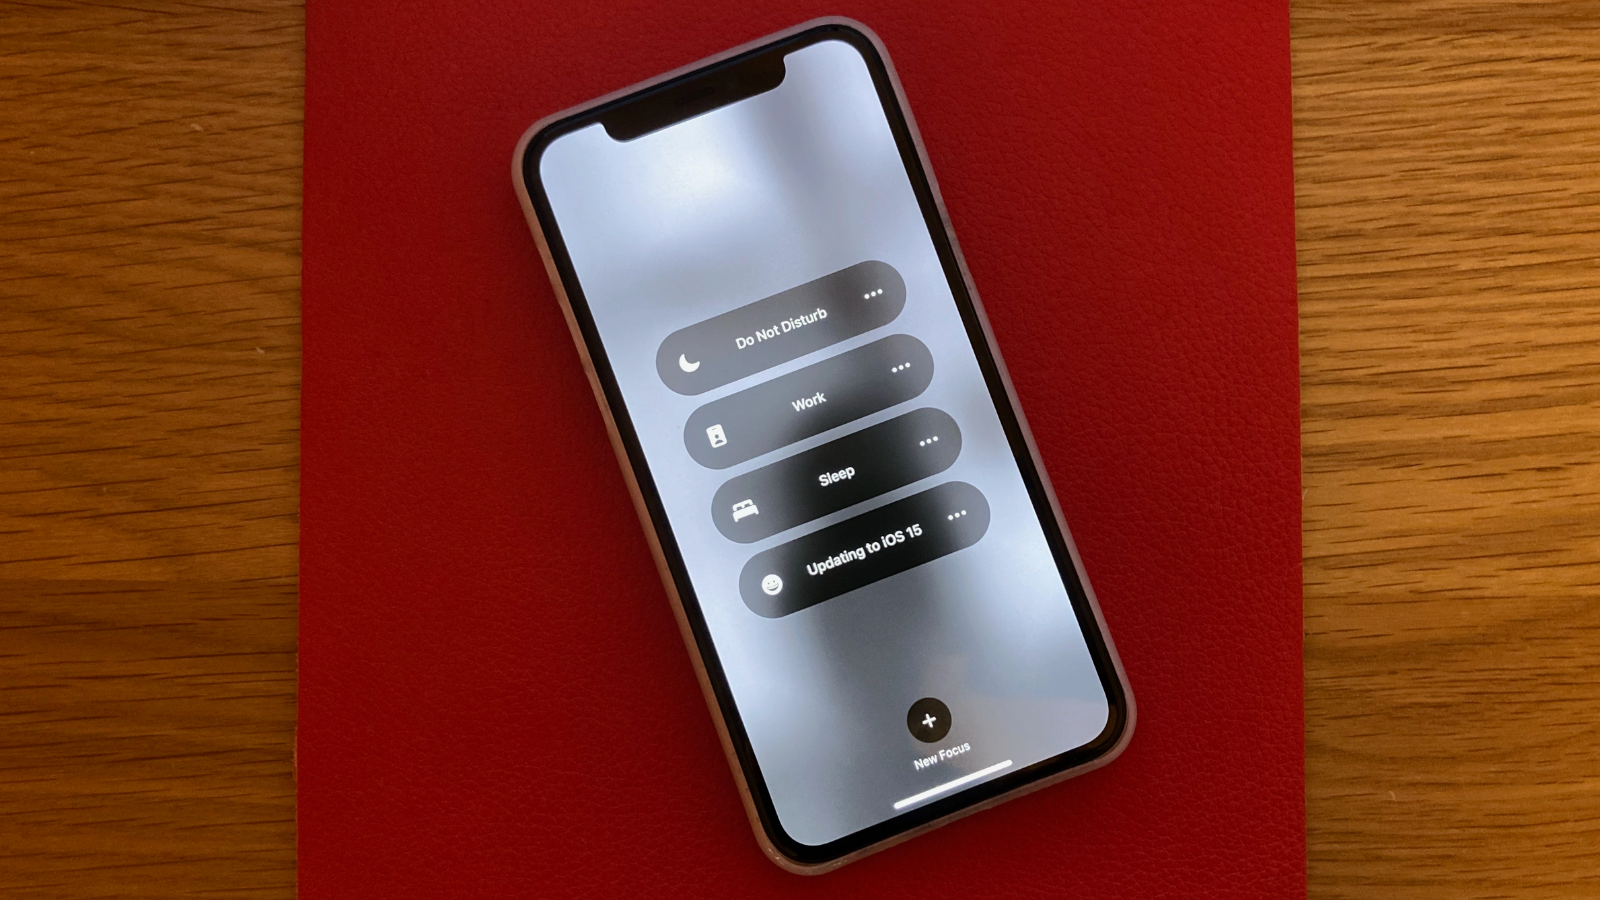 Confira quais iphones vão receber o ios 16. Fonte de site francês afirma que aparelhos com processadores anteriores ao a10 bionic não receberão as novas versões do sistema operacional da apple